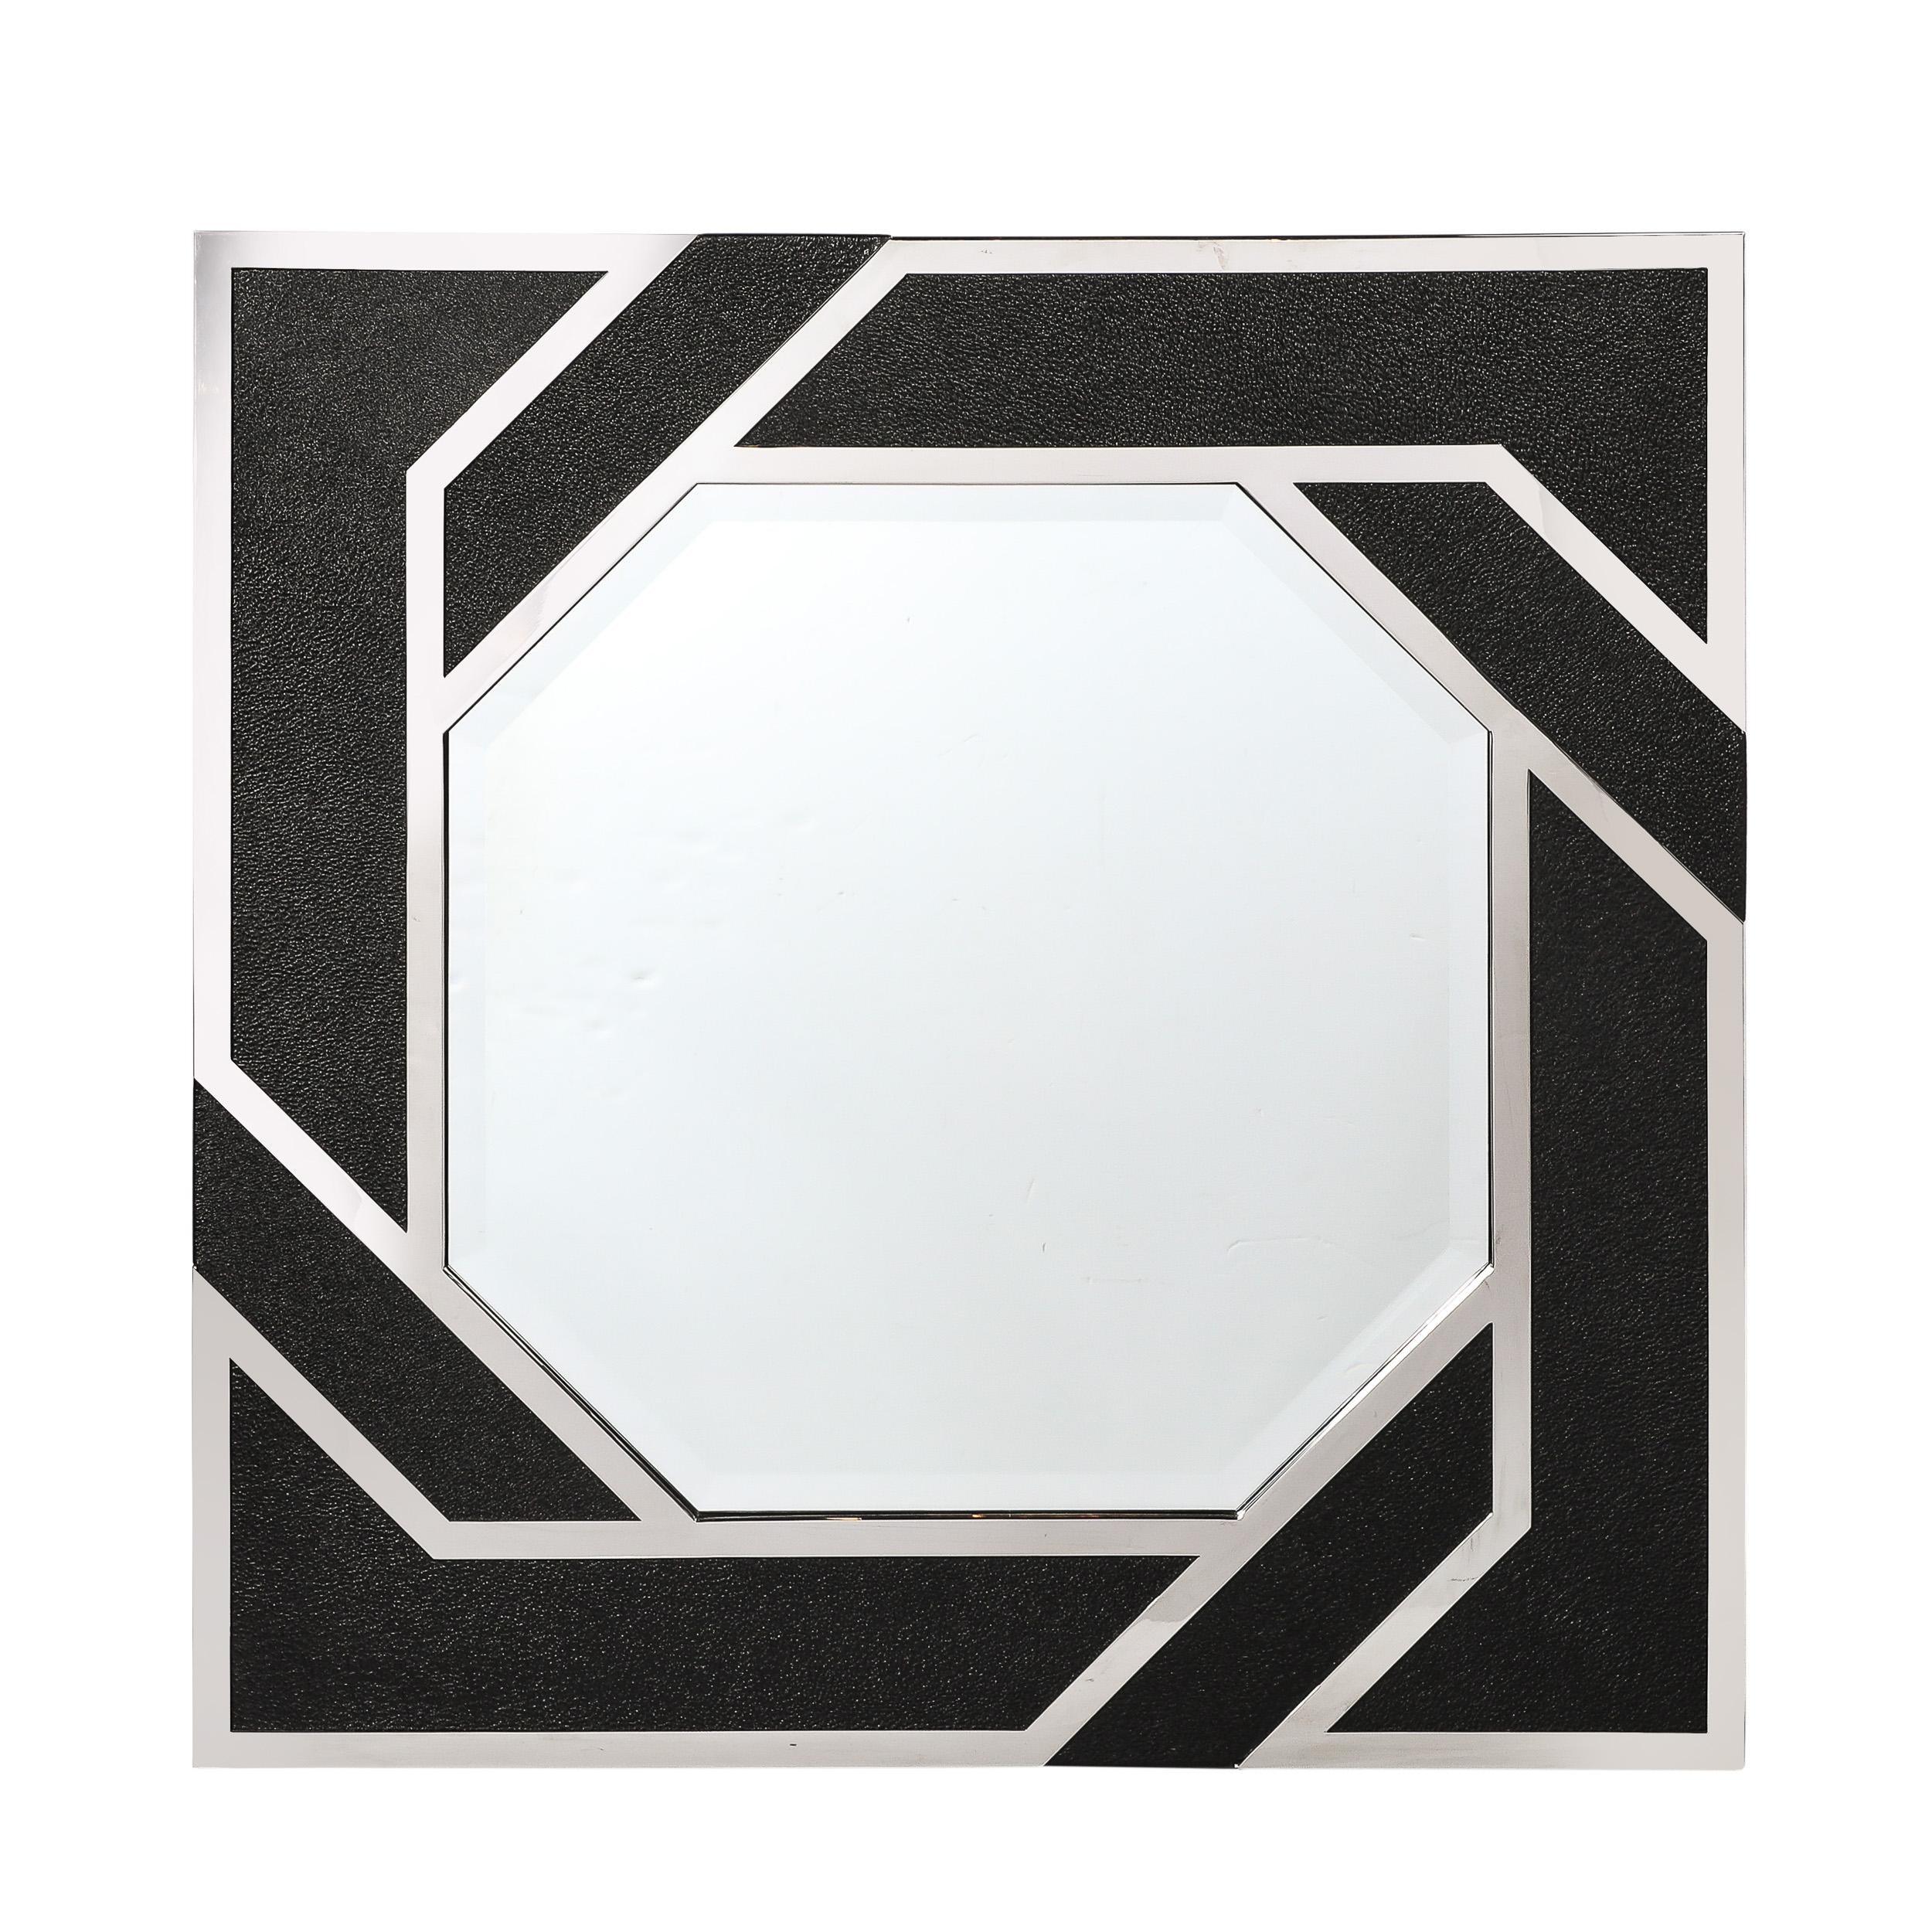 Ce miroir géométrique audacieux et dynamique de forme spirale en cuir gaufré et chrome a été créé par Lorin Marsh et provient des États-Unis au cours de la seconde moitié du 20e siècle. Le cadre est composé d'éléments rectilignes en nickel poli, qui